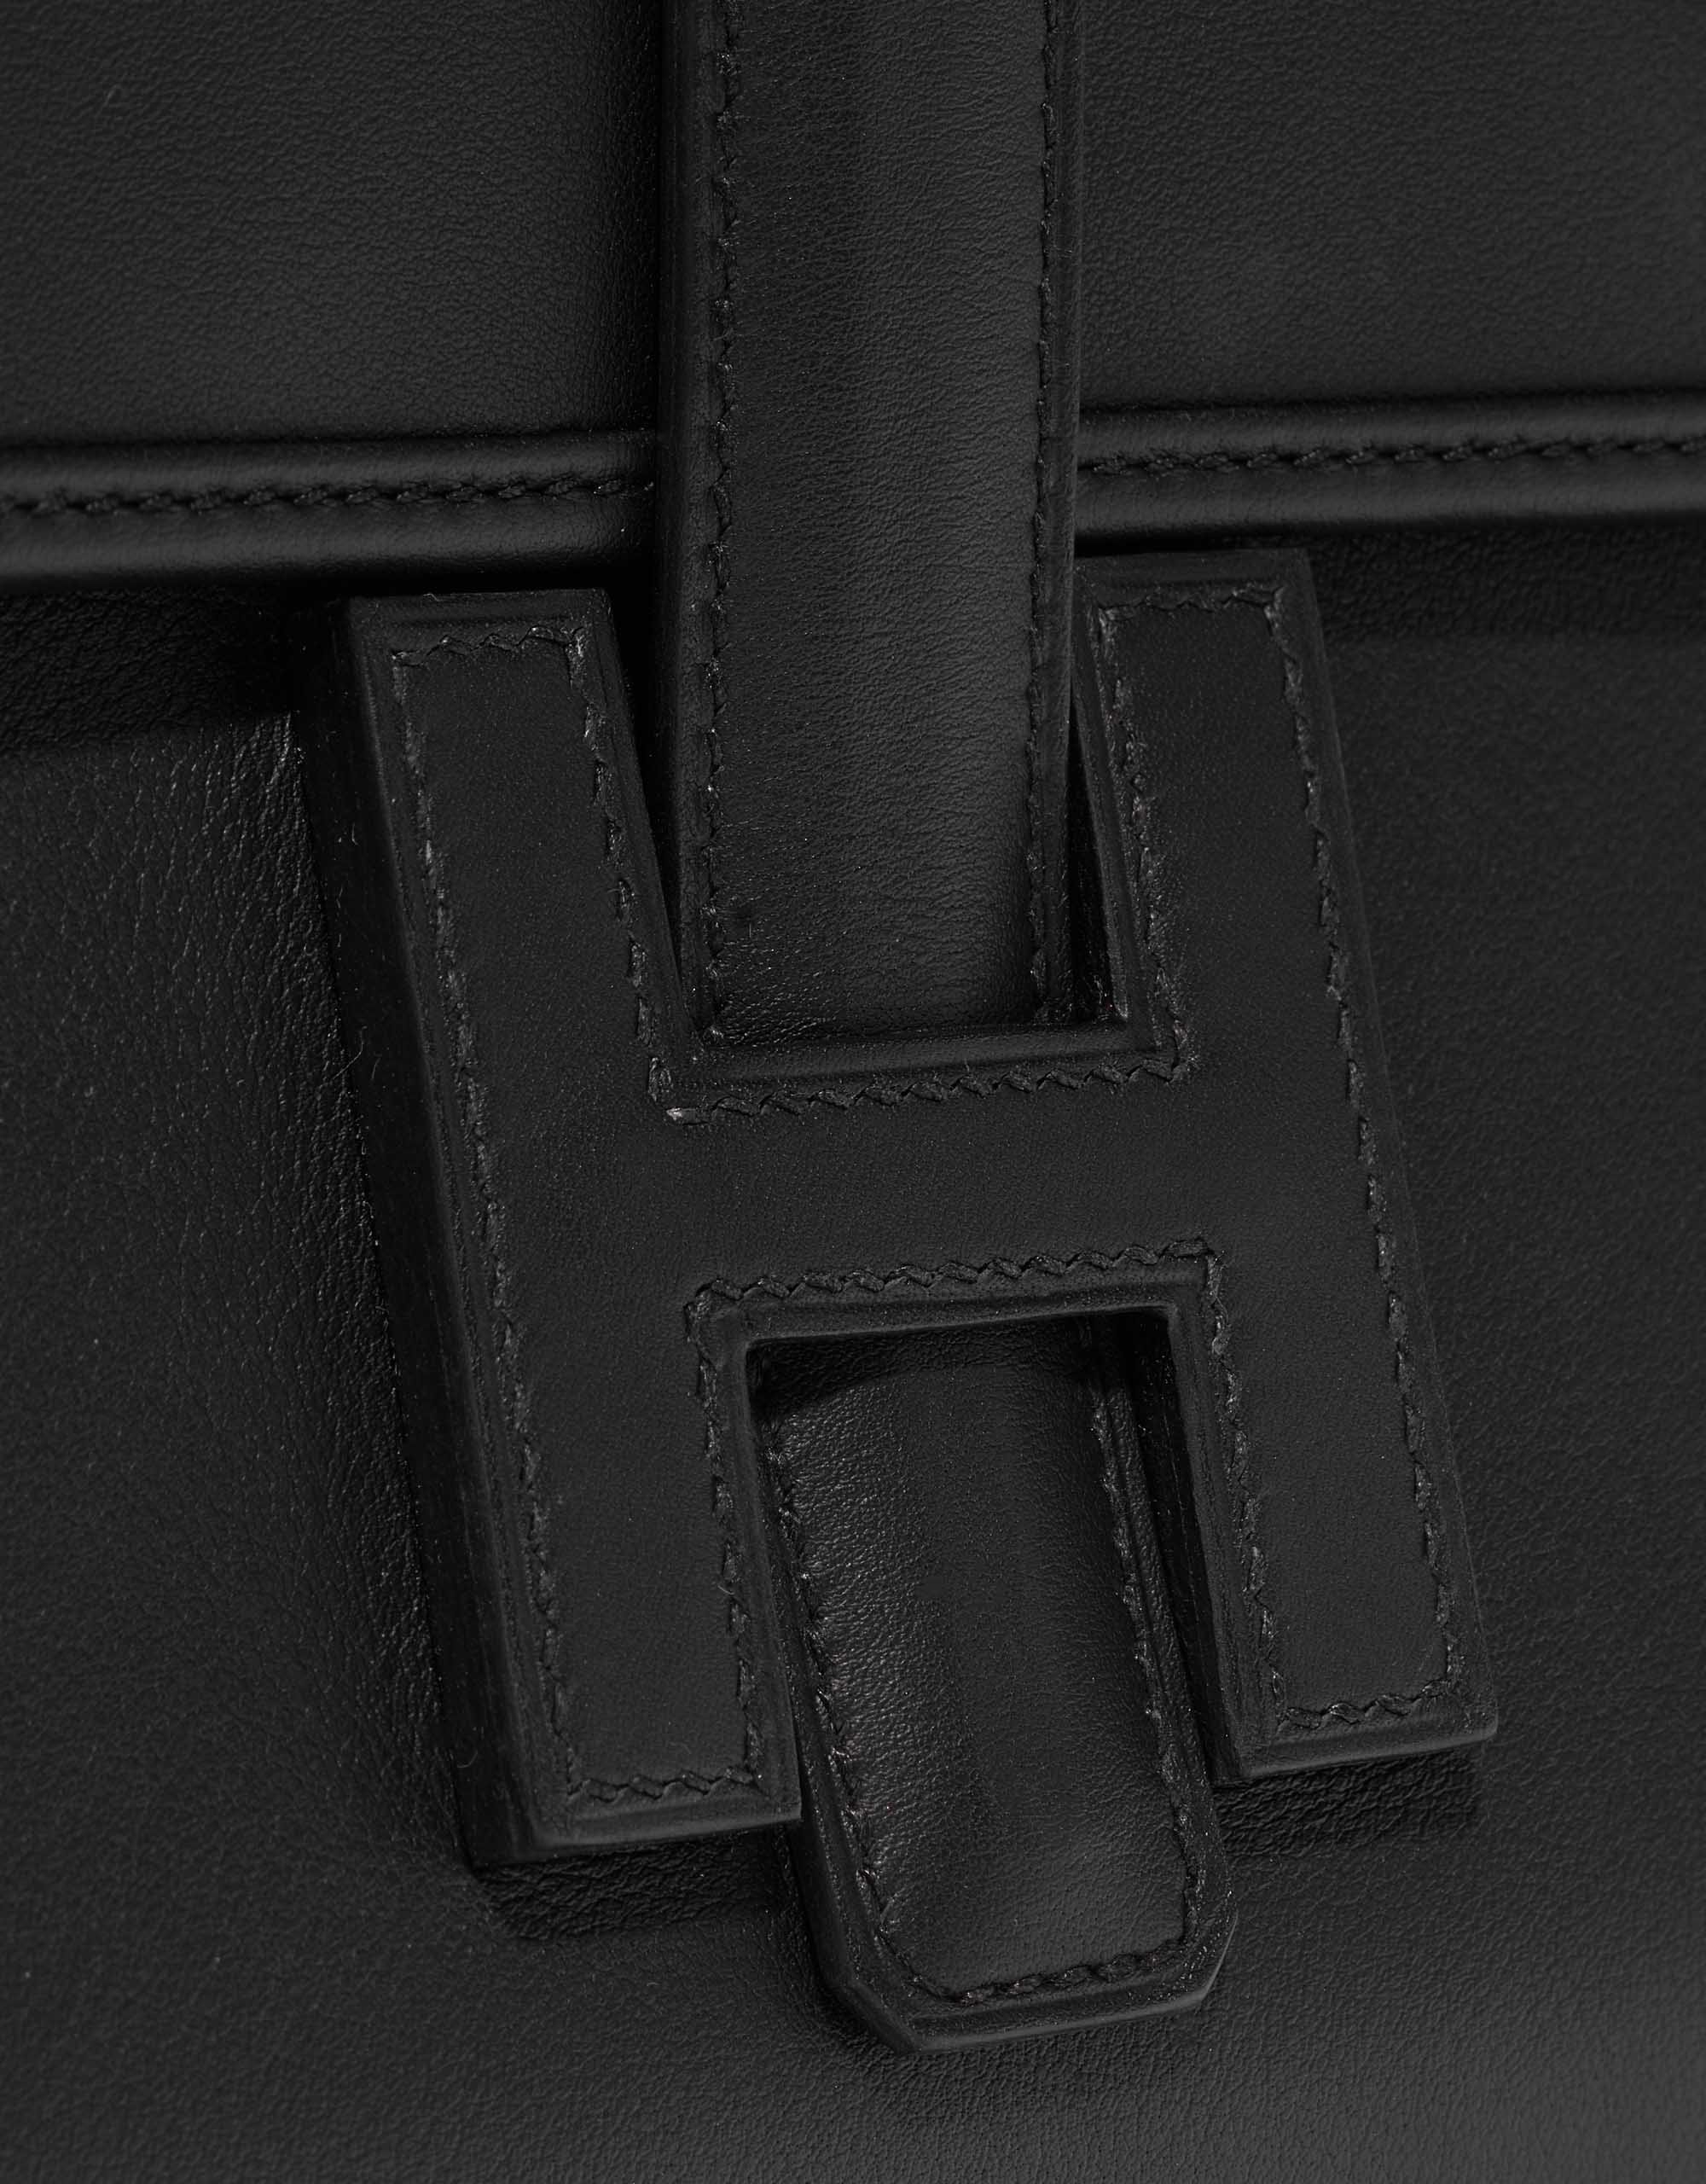 Hermes Jige Elan Swift 29 Black Leather Clutch